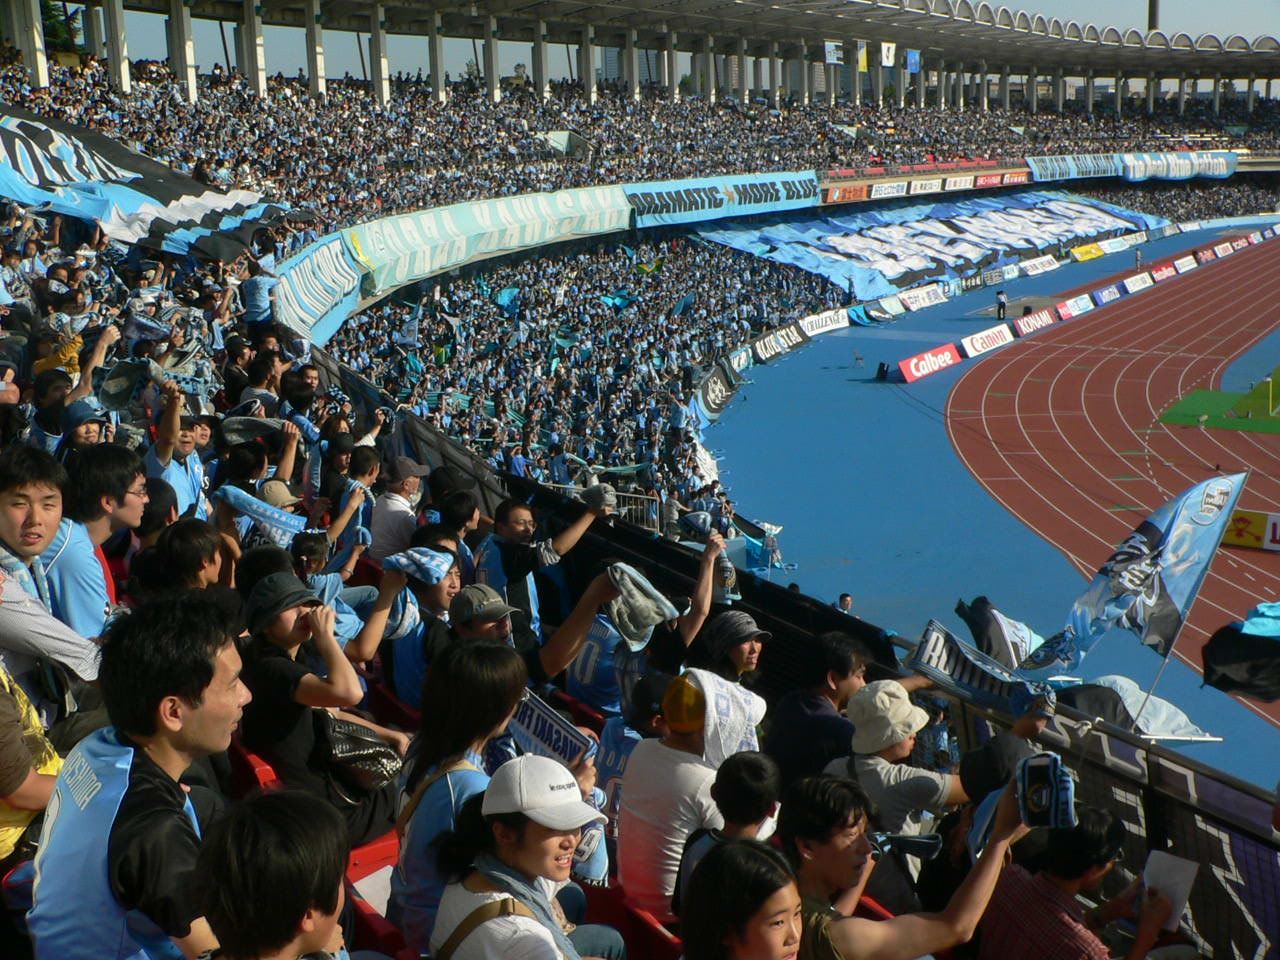 Kawasaki Frontale – Stadium Tours